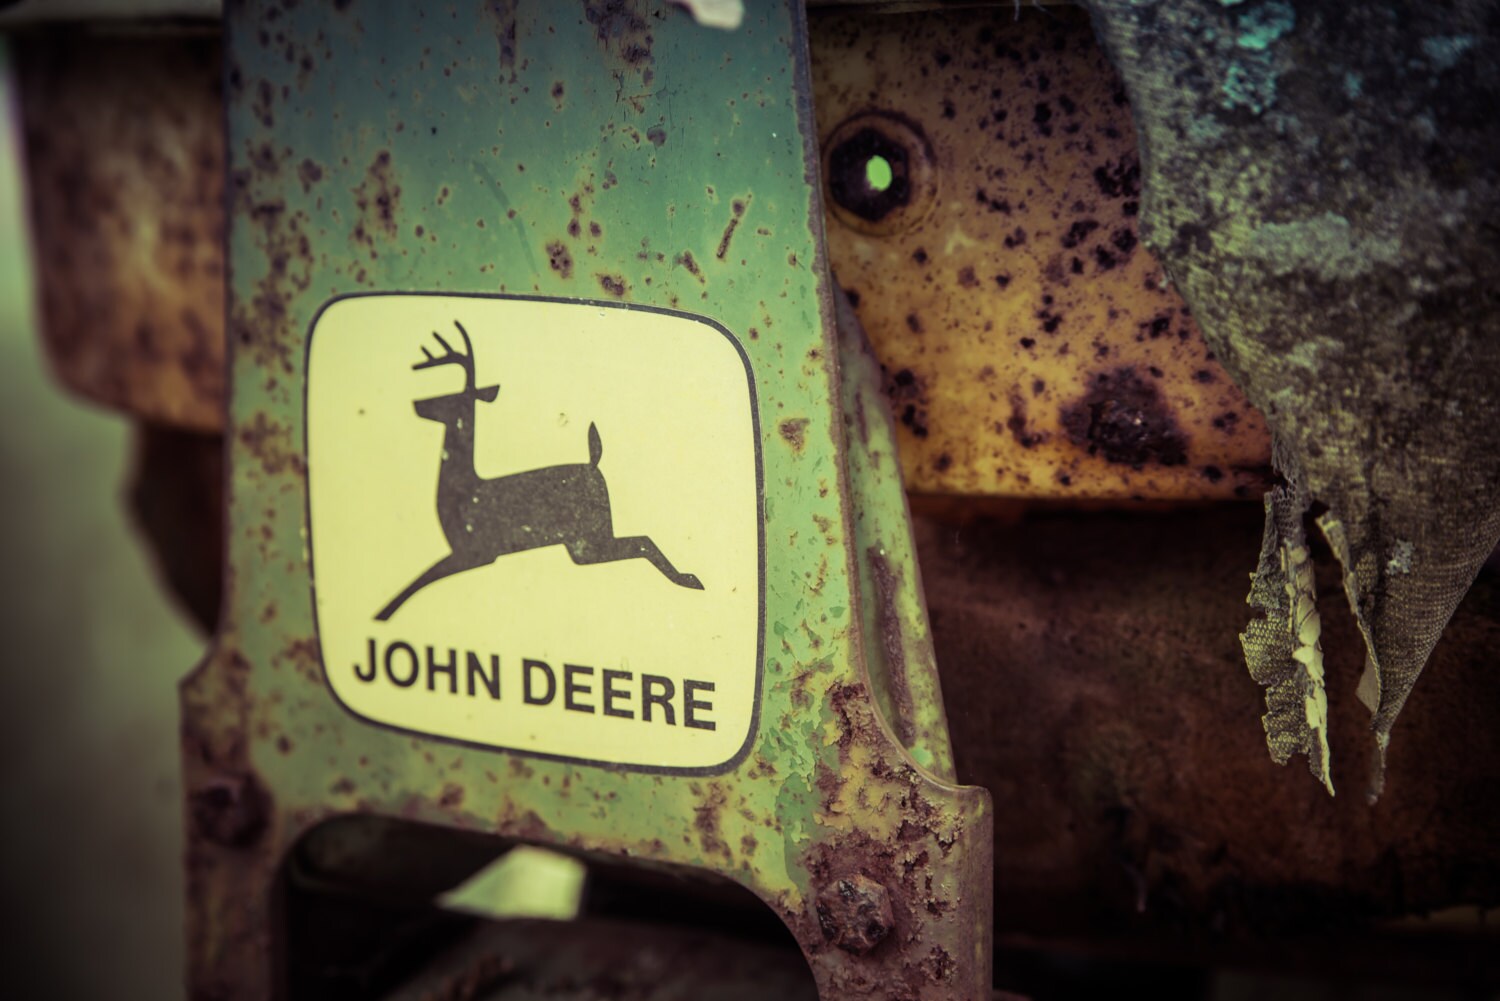 John Deere Tractor Photograph - Tractor Photography, Americana Photography, Farmhouse Photography, Metal Wall Art, Office Wall Art